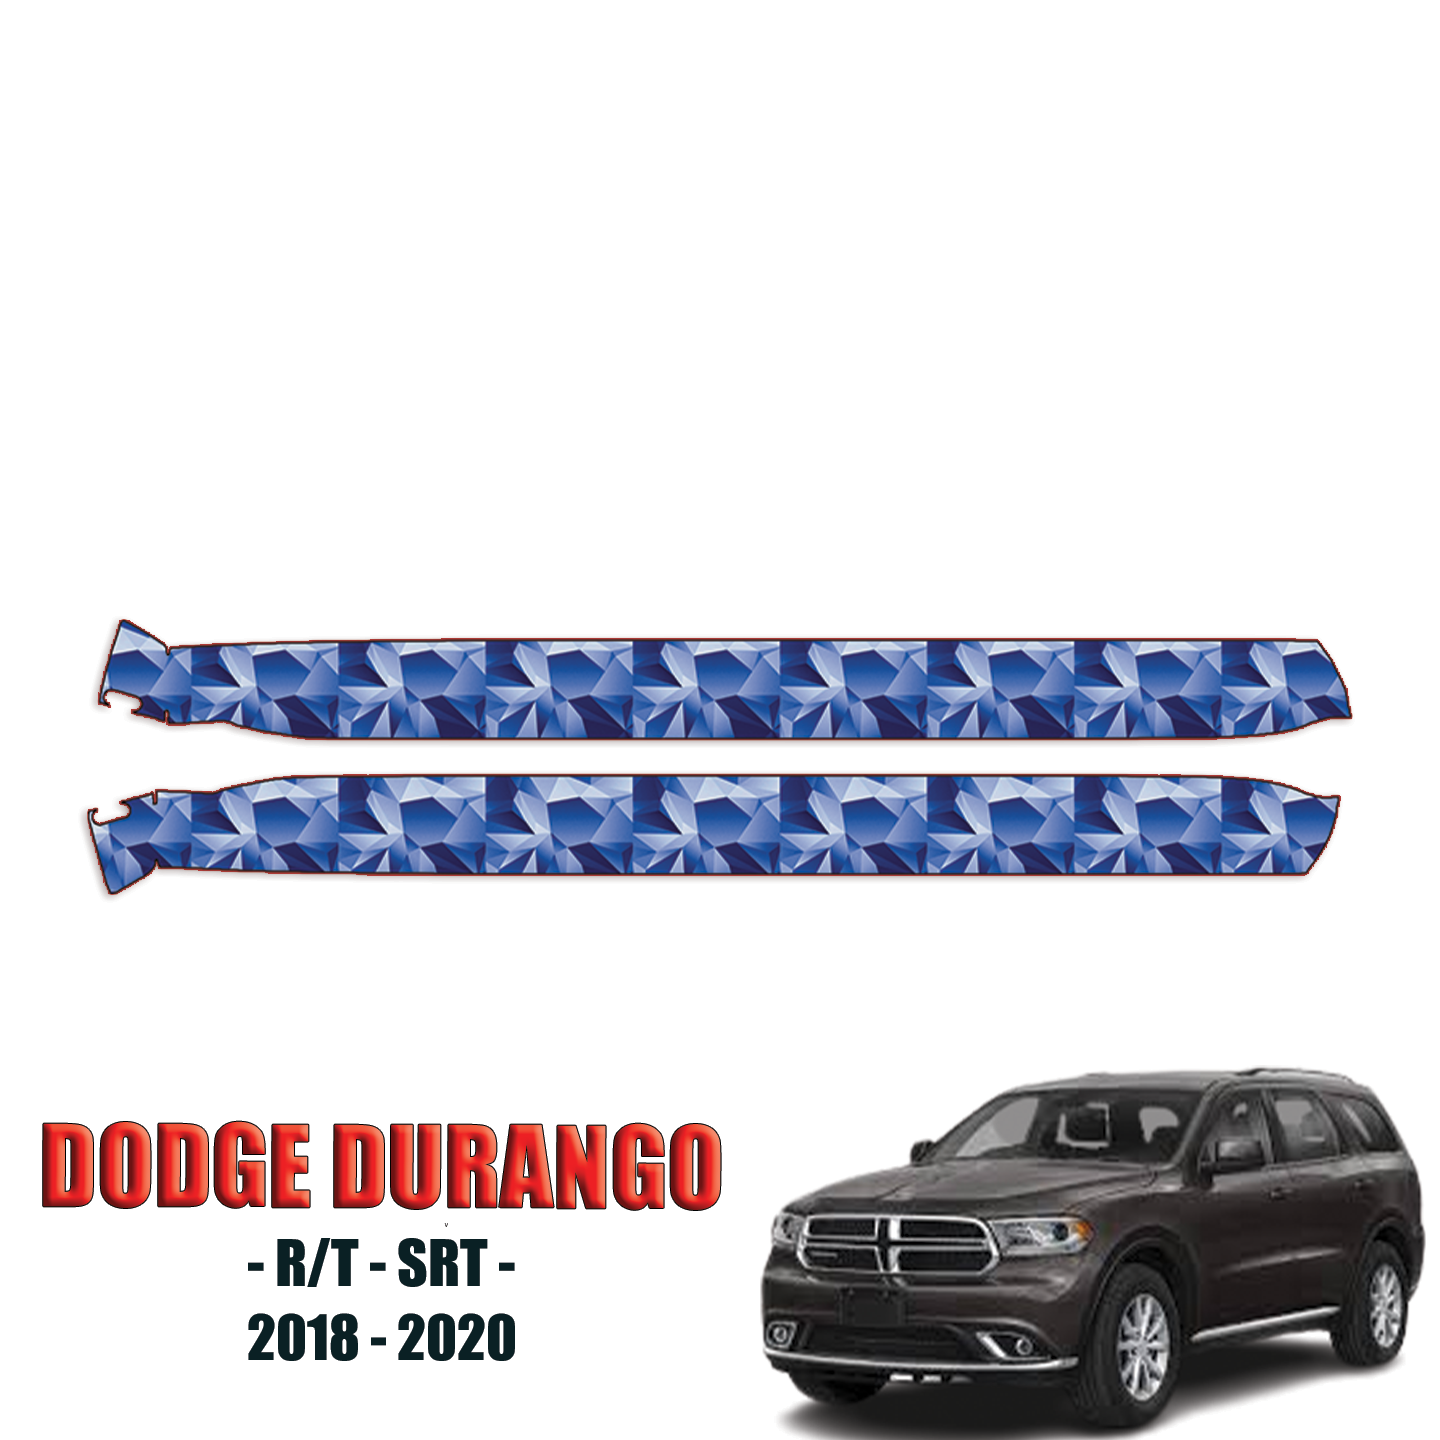 2018-2020 Dodge Durango – R/T, SRT Precut Paint Protection Film – Rocker Panels